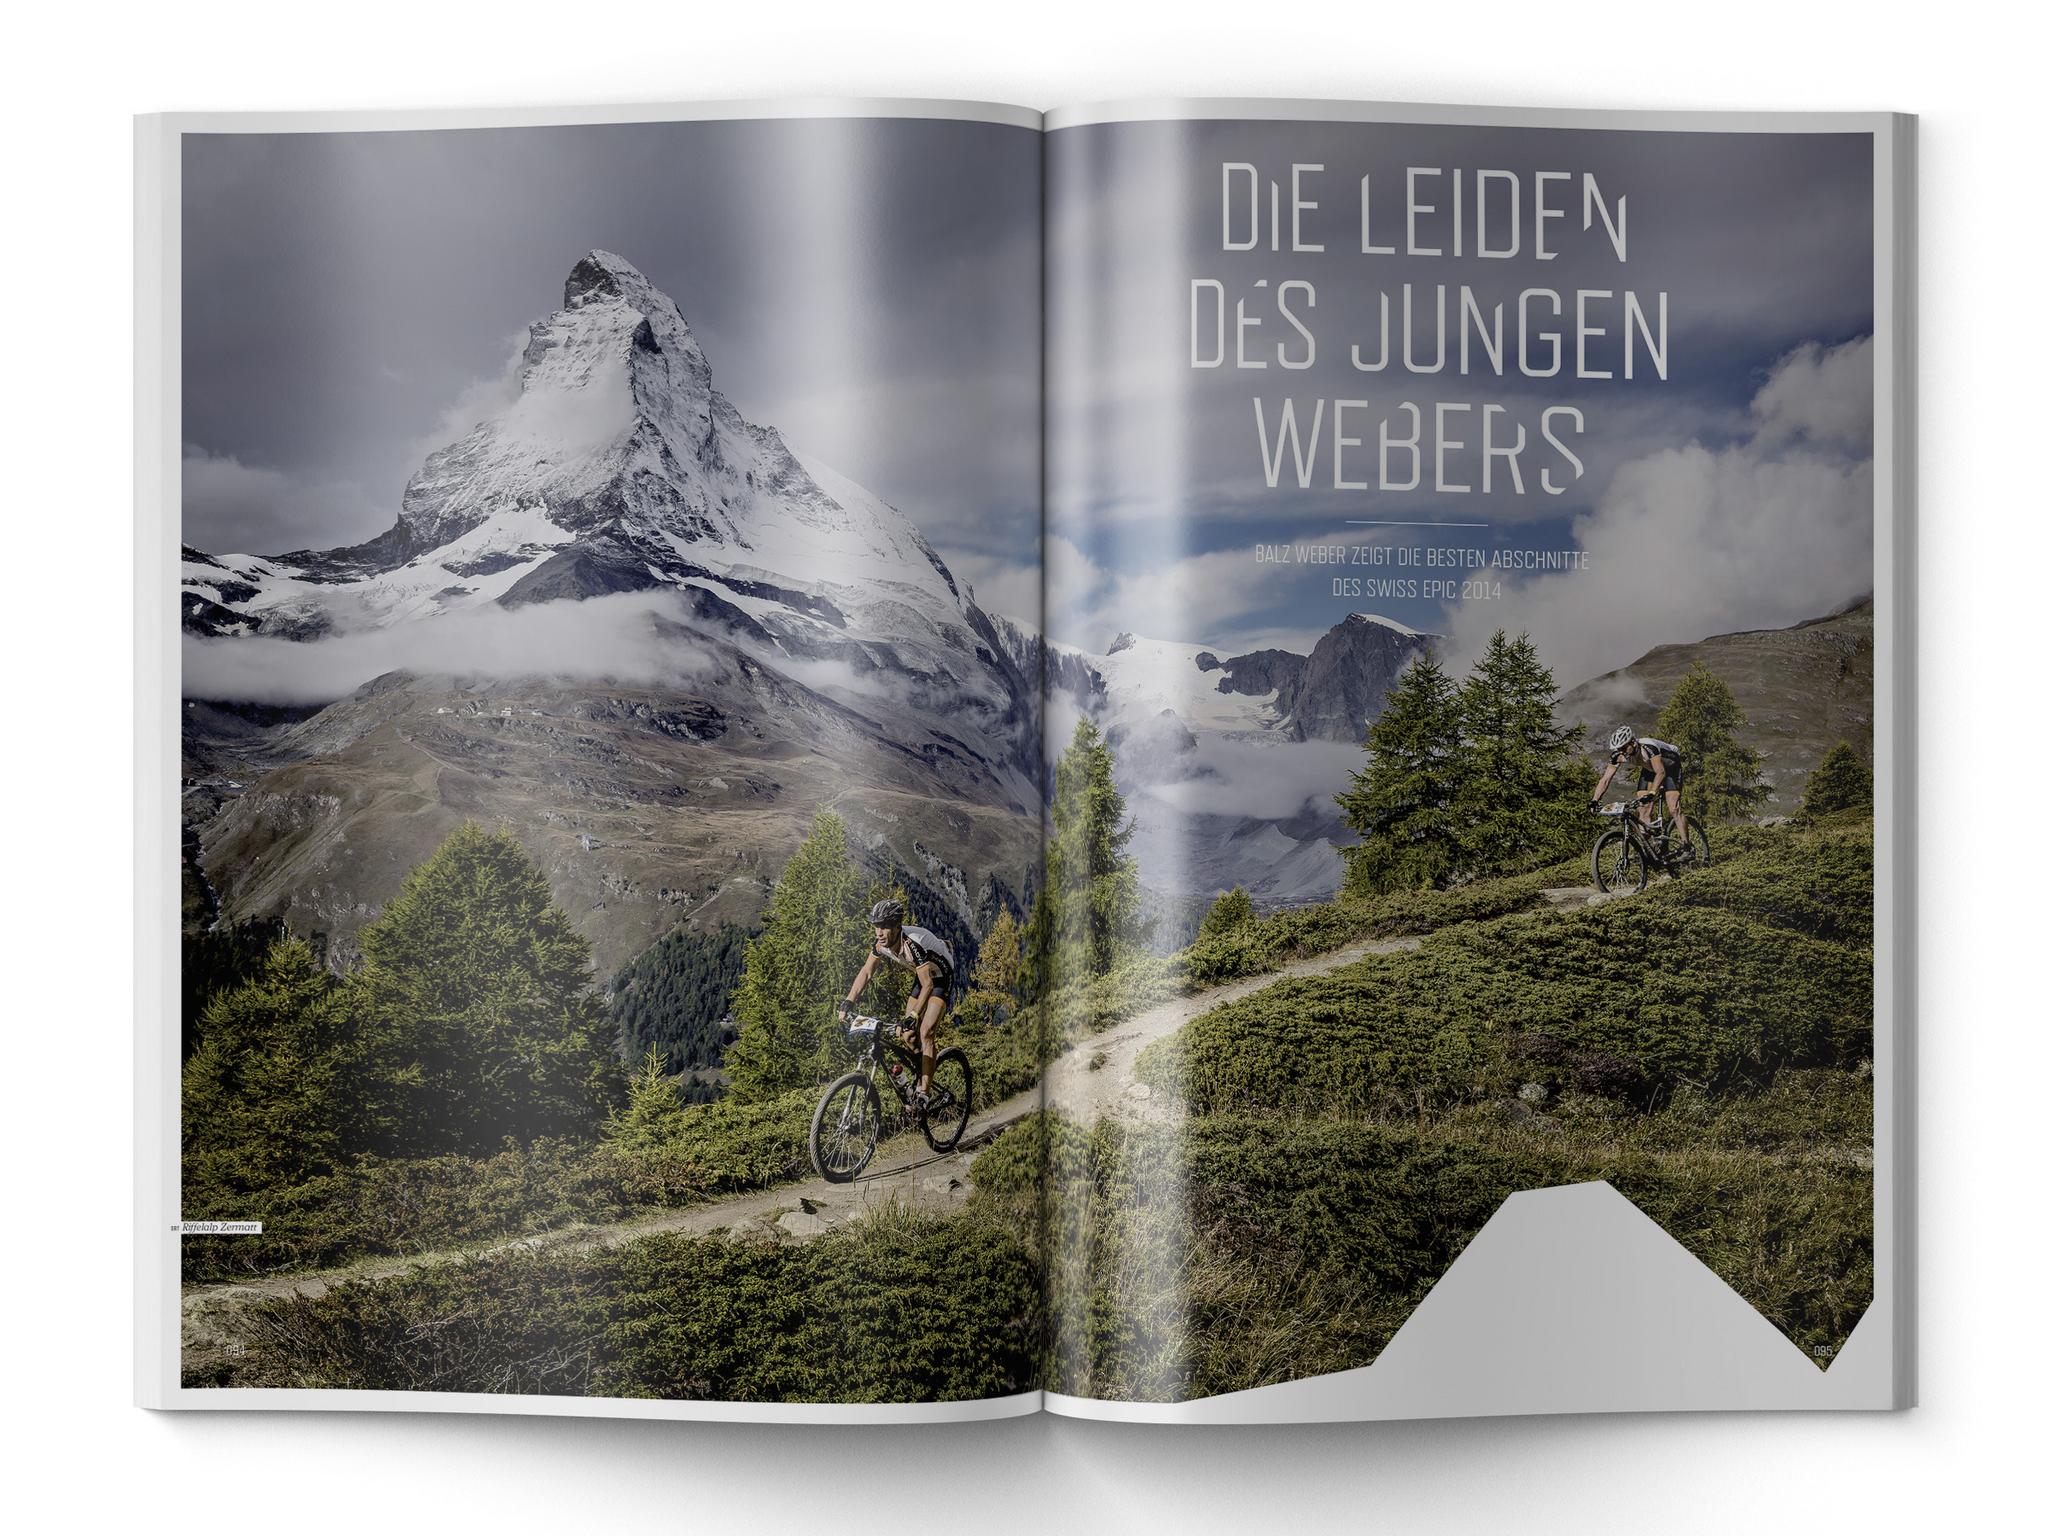 Ride 01/2015, Tour2: Die besten Abschnitte des Swiss Epic 2014